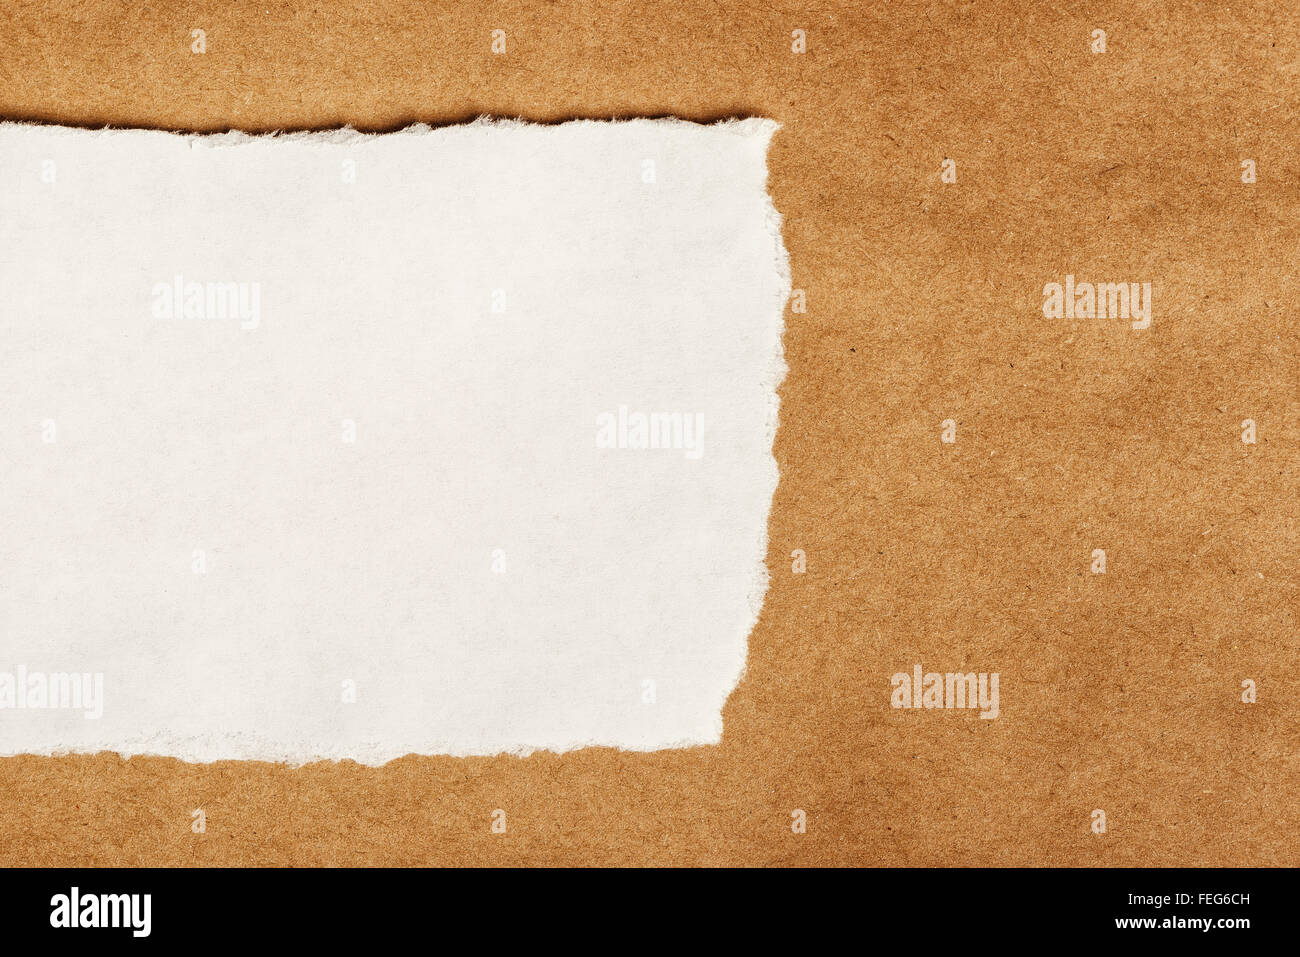 La carta da macero come copia di spazio, vista dall'alto, materiale cartaceo texture come sfondo per un messaggio di testo o grafica. Foto Stock